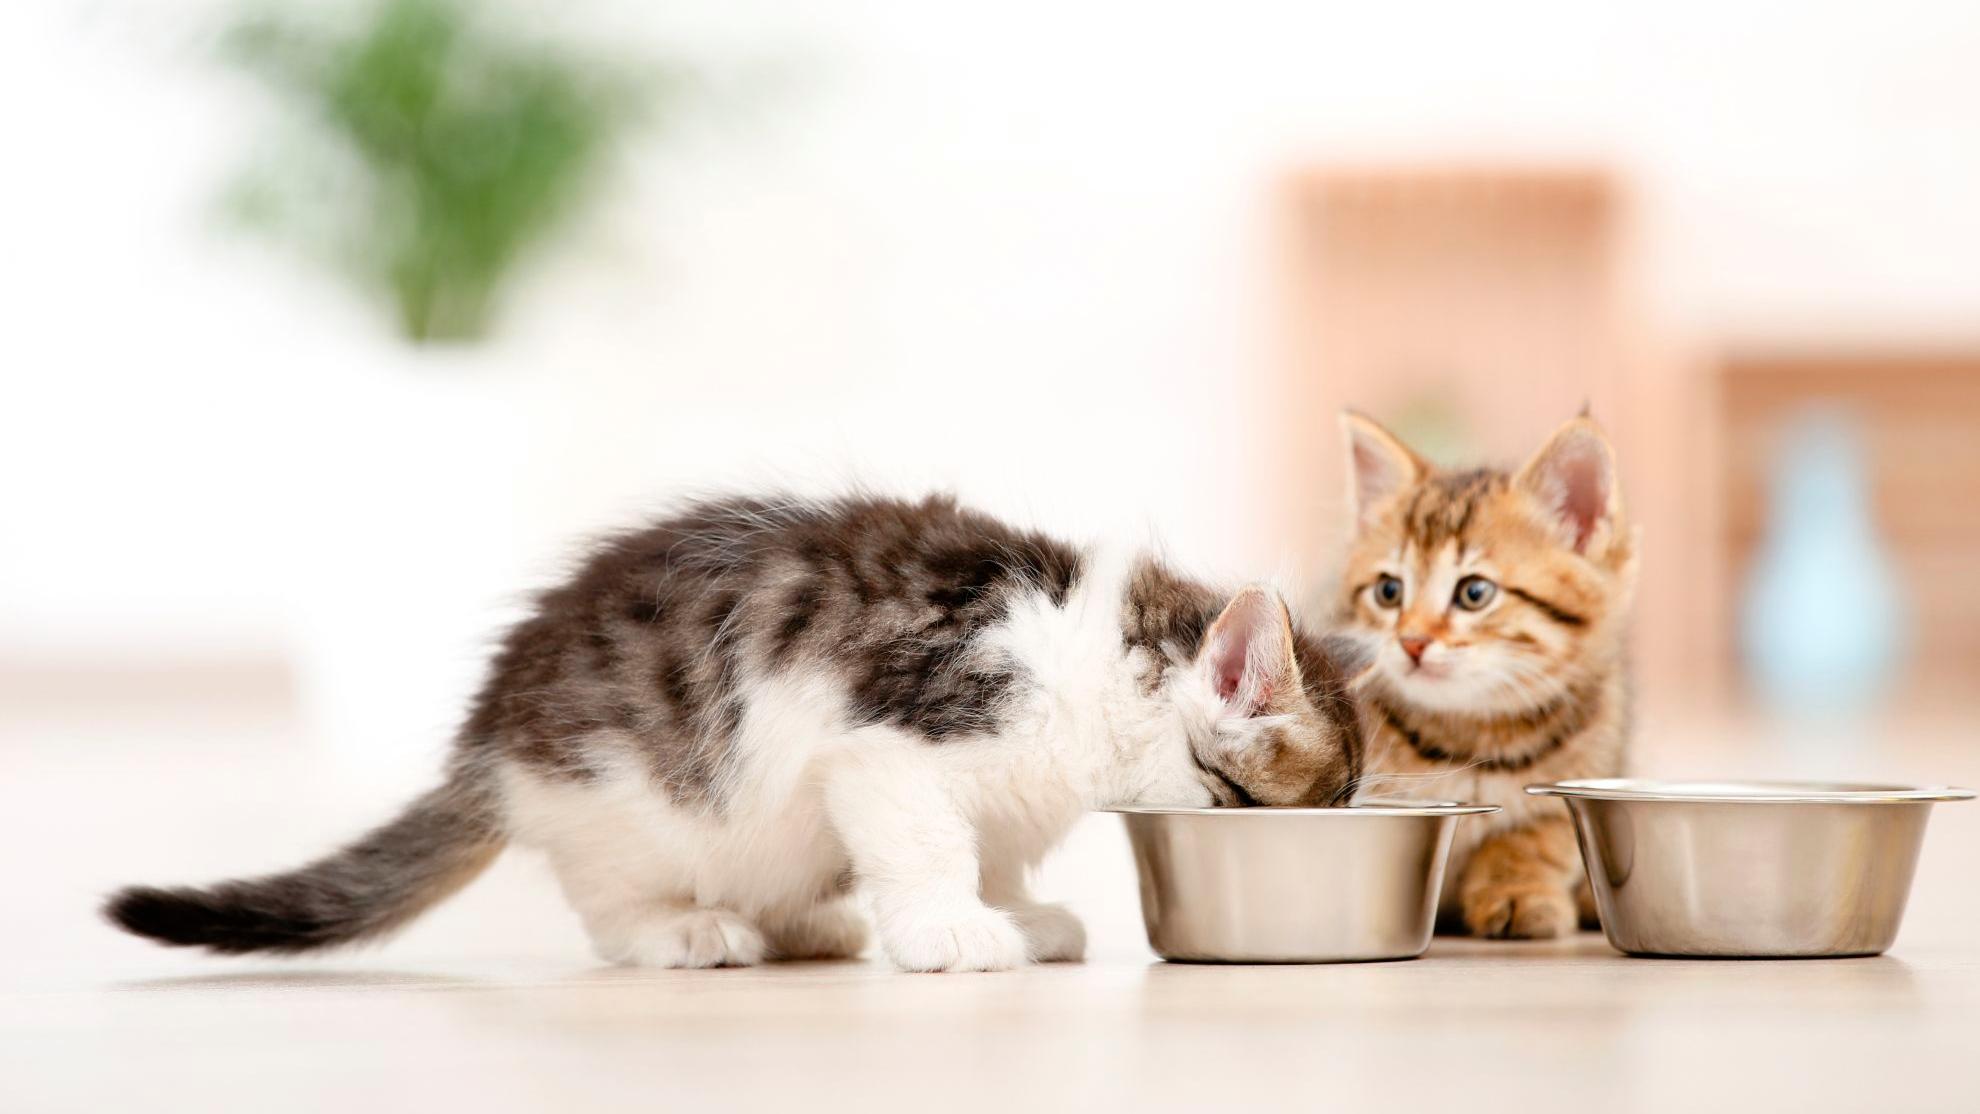 Filhotes de gato comendo em uma tigela no chão